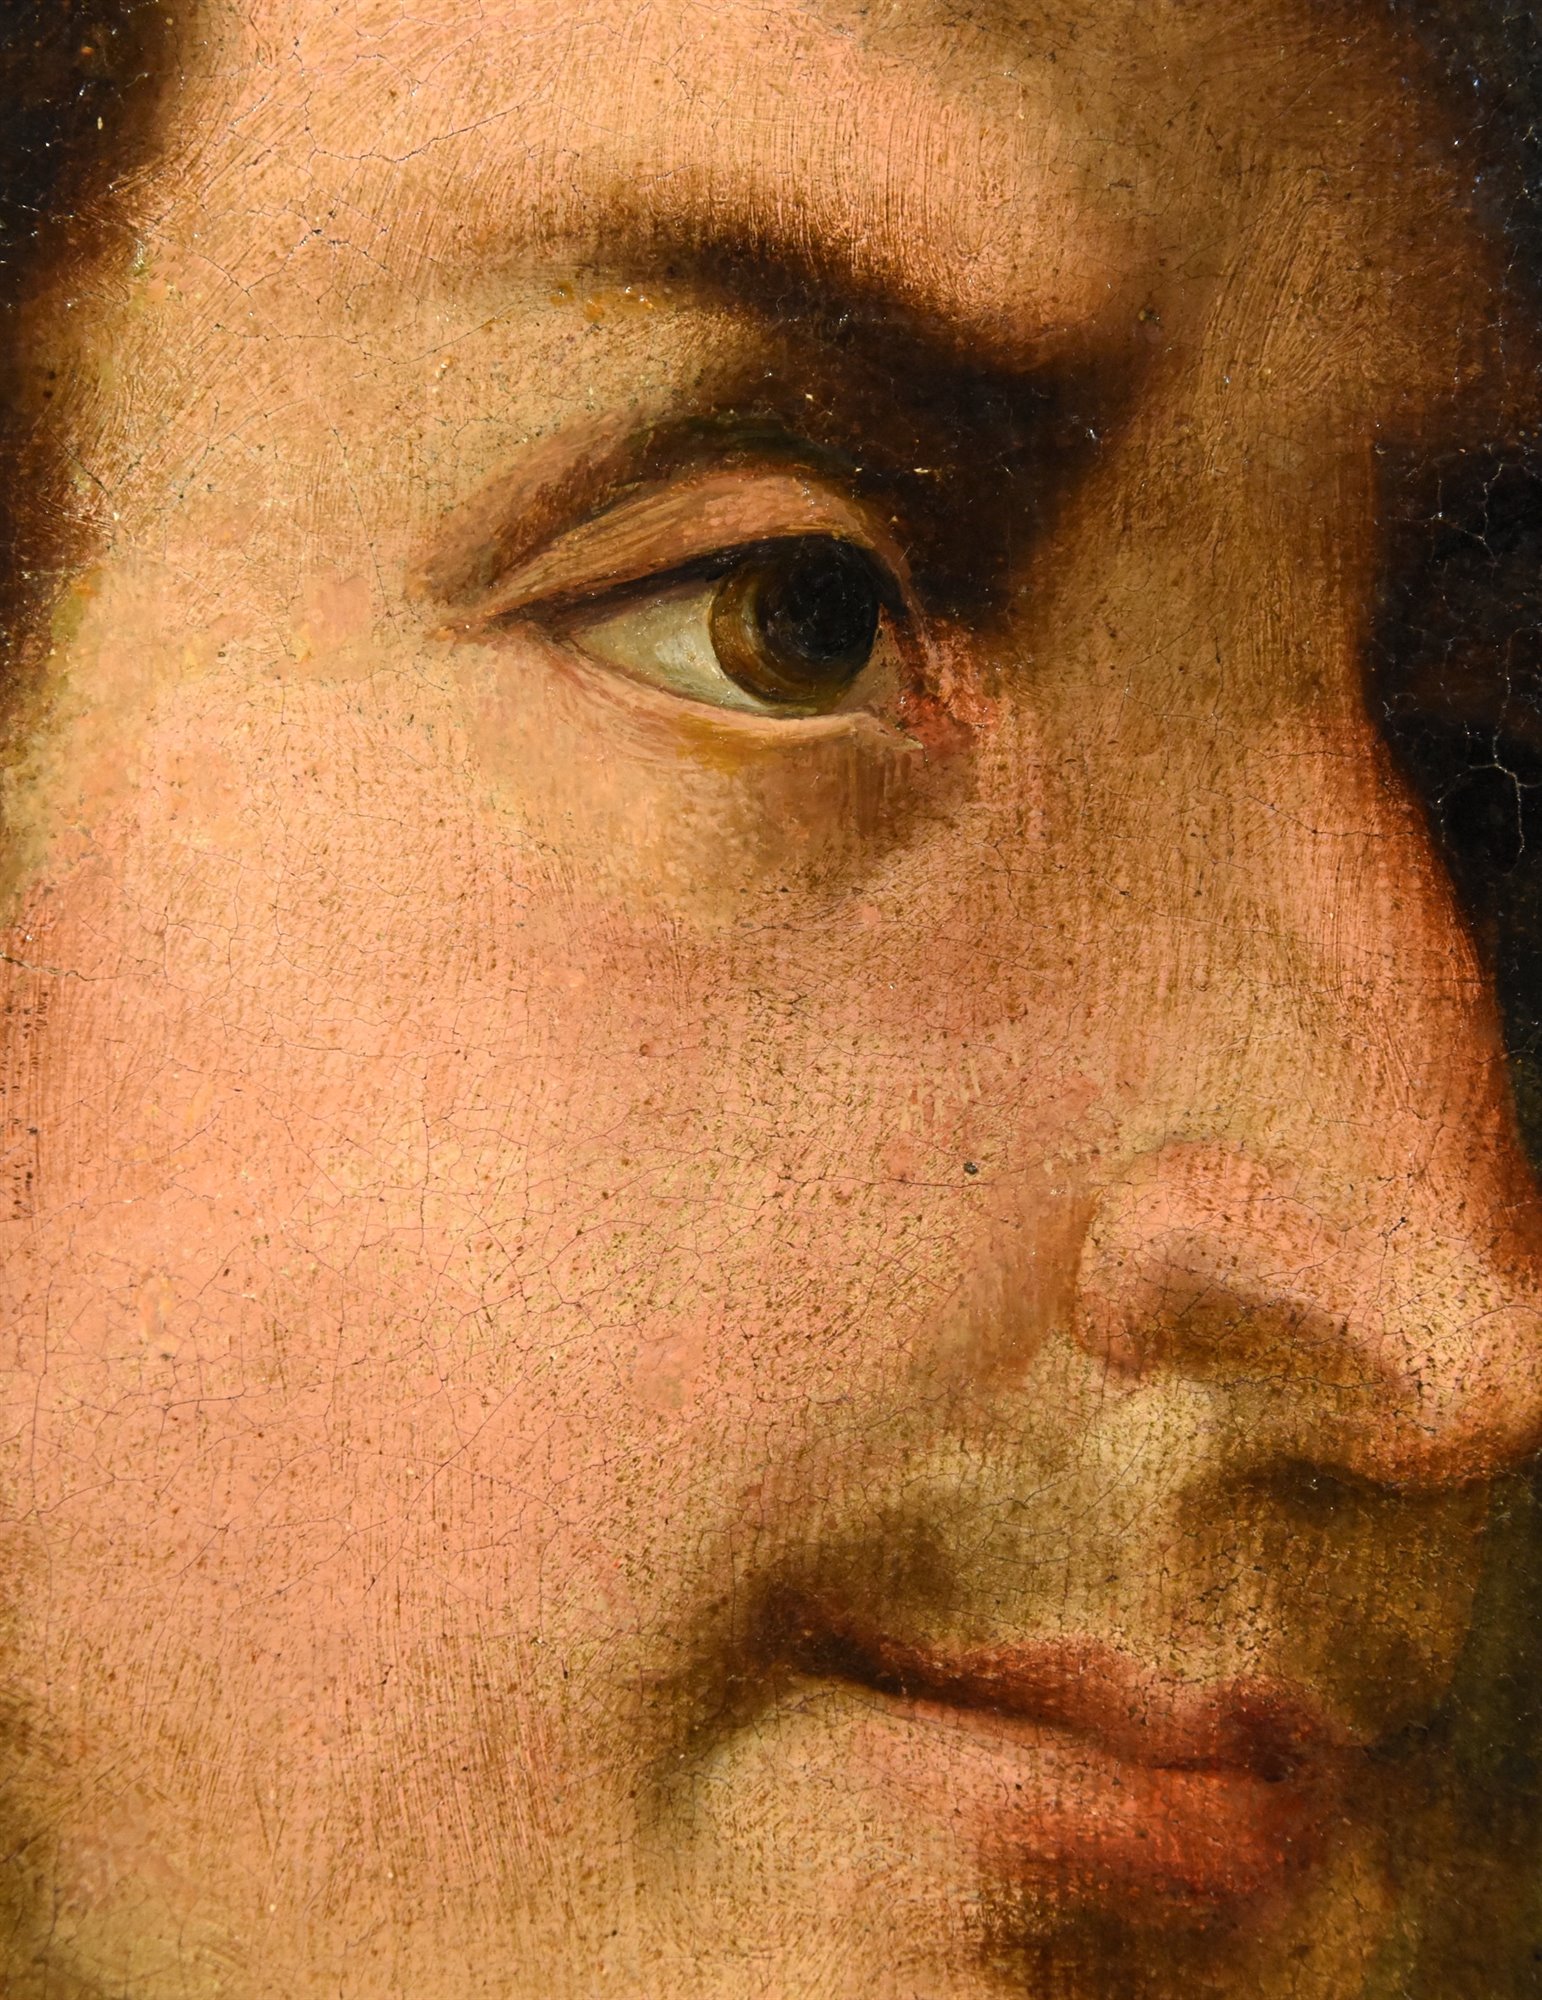 Tiziano Vecellio (Pieve di Cadore 1490 - Venezia 1576) seguace